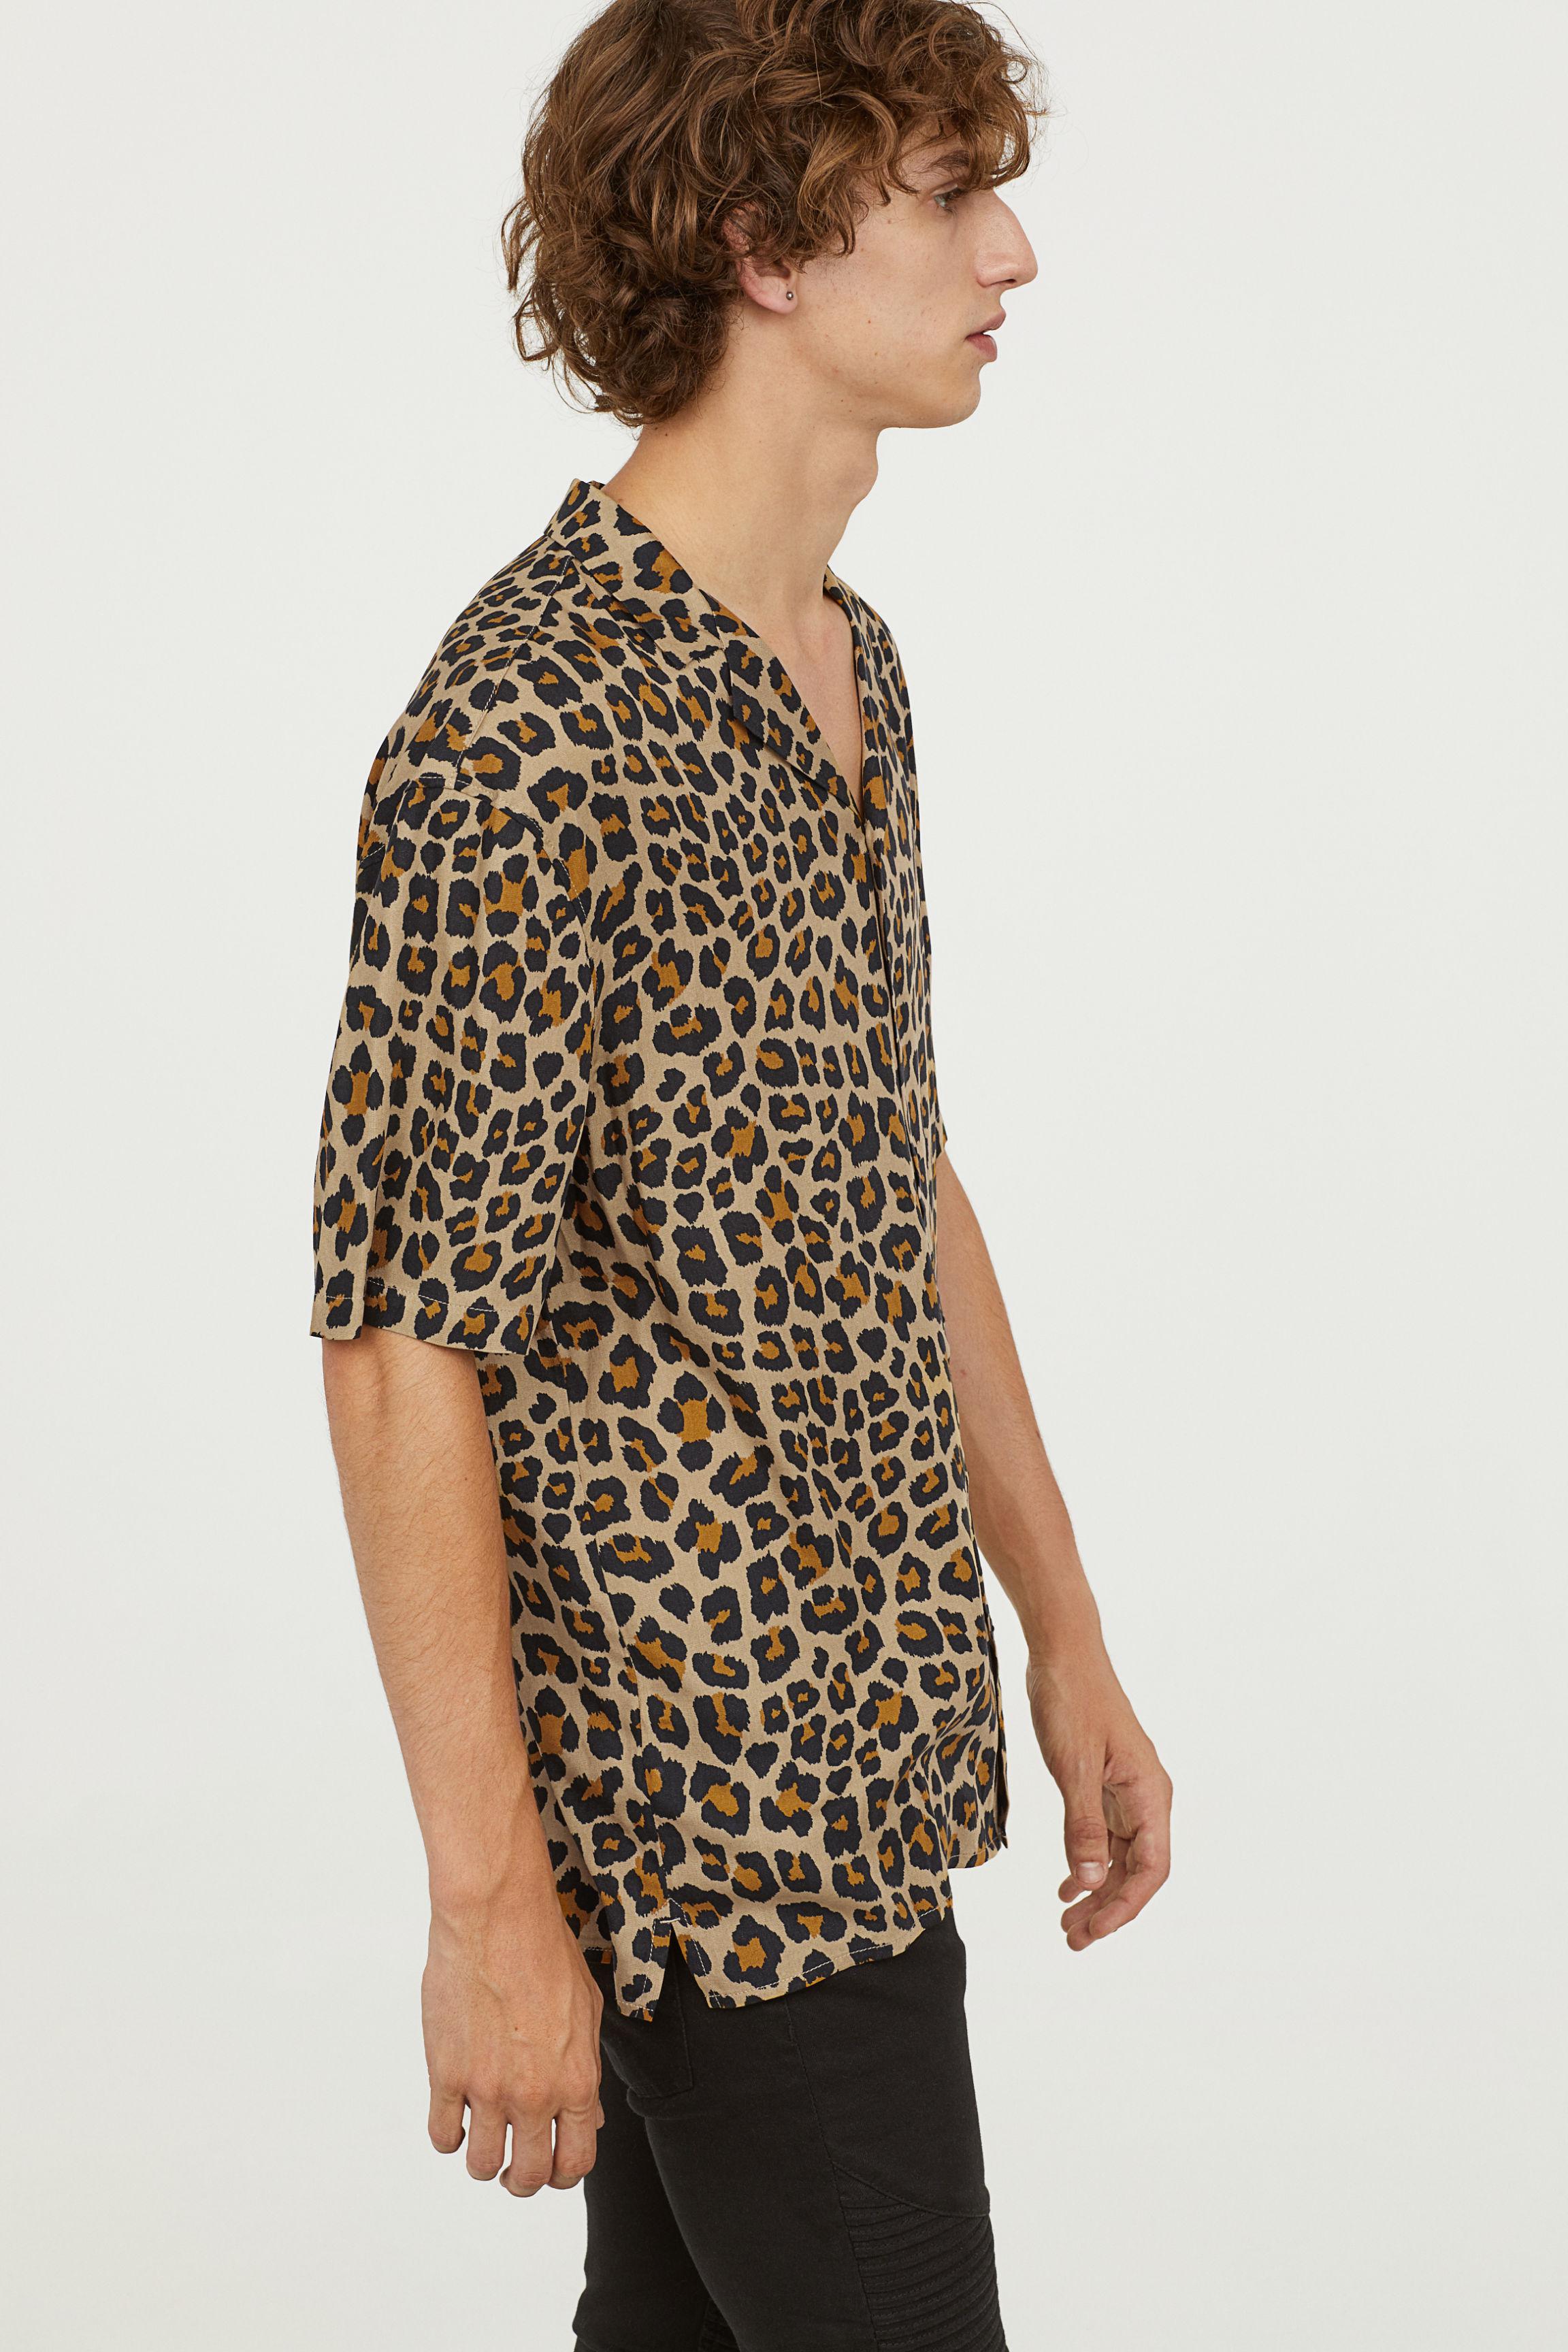 H&M Patterned Resort Shirt in Natural for Men | Lyst